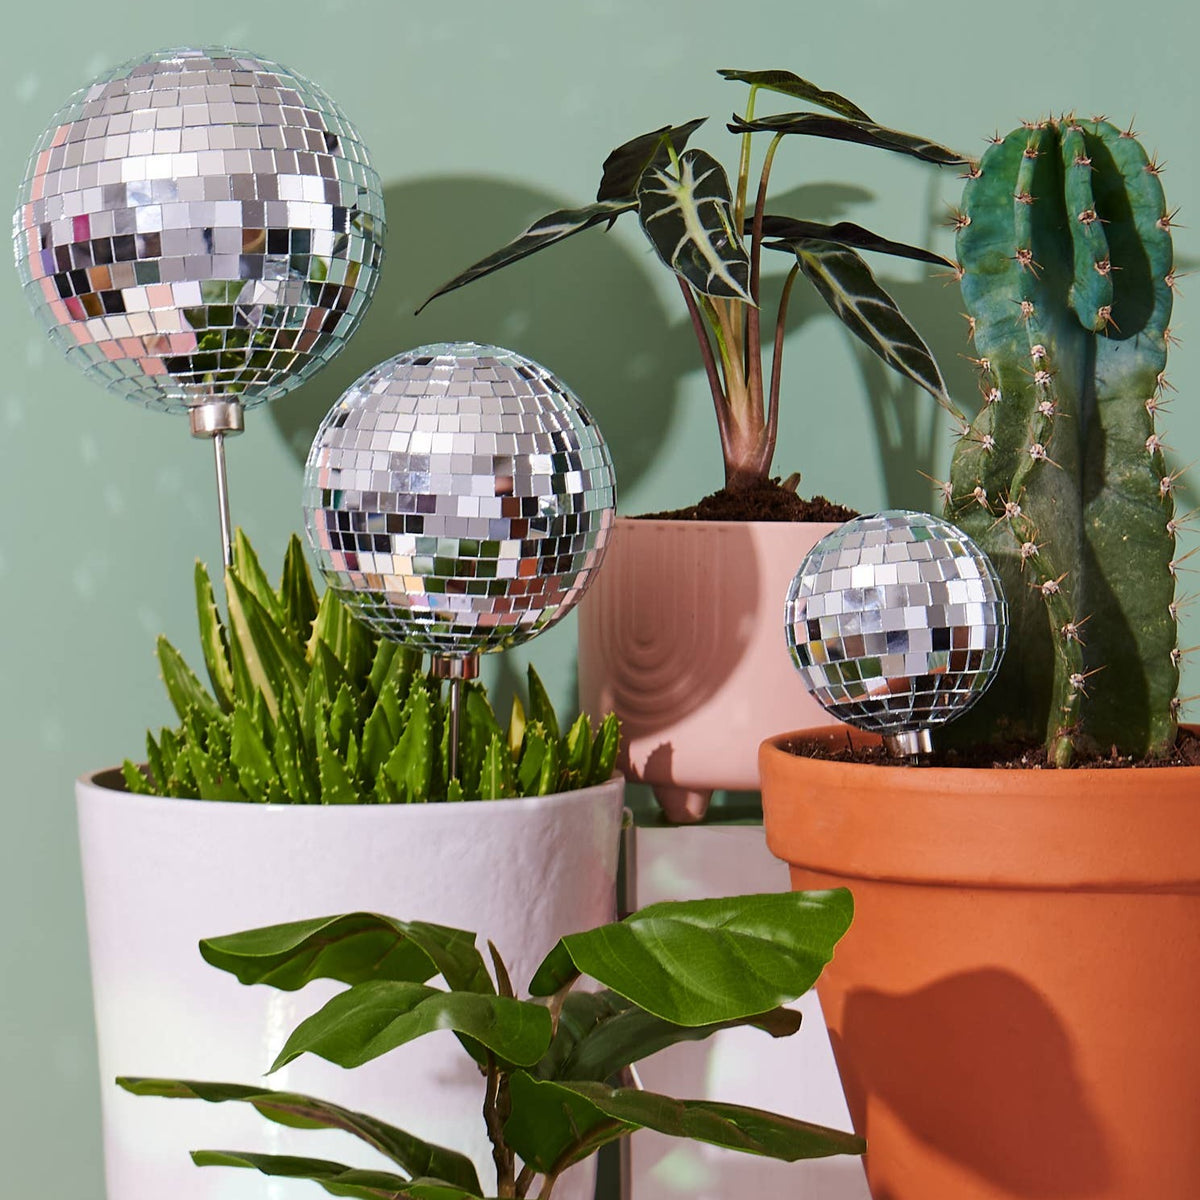 Disco BB - Disco Ball Decorative Plant Stakes